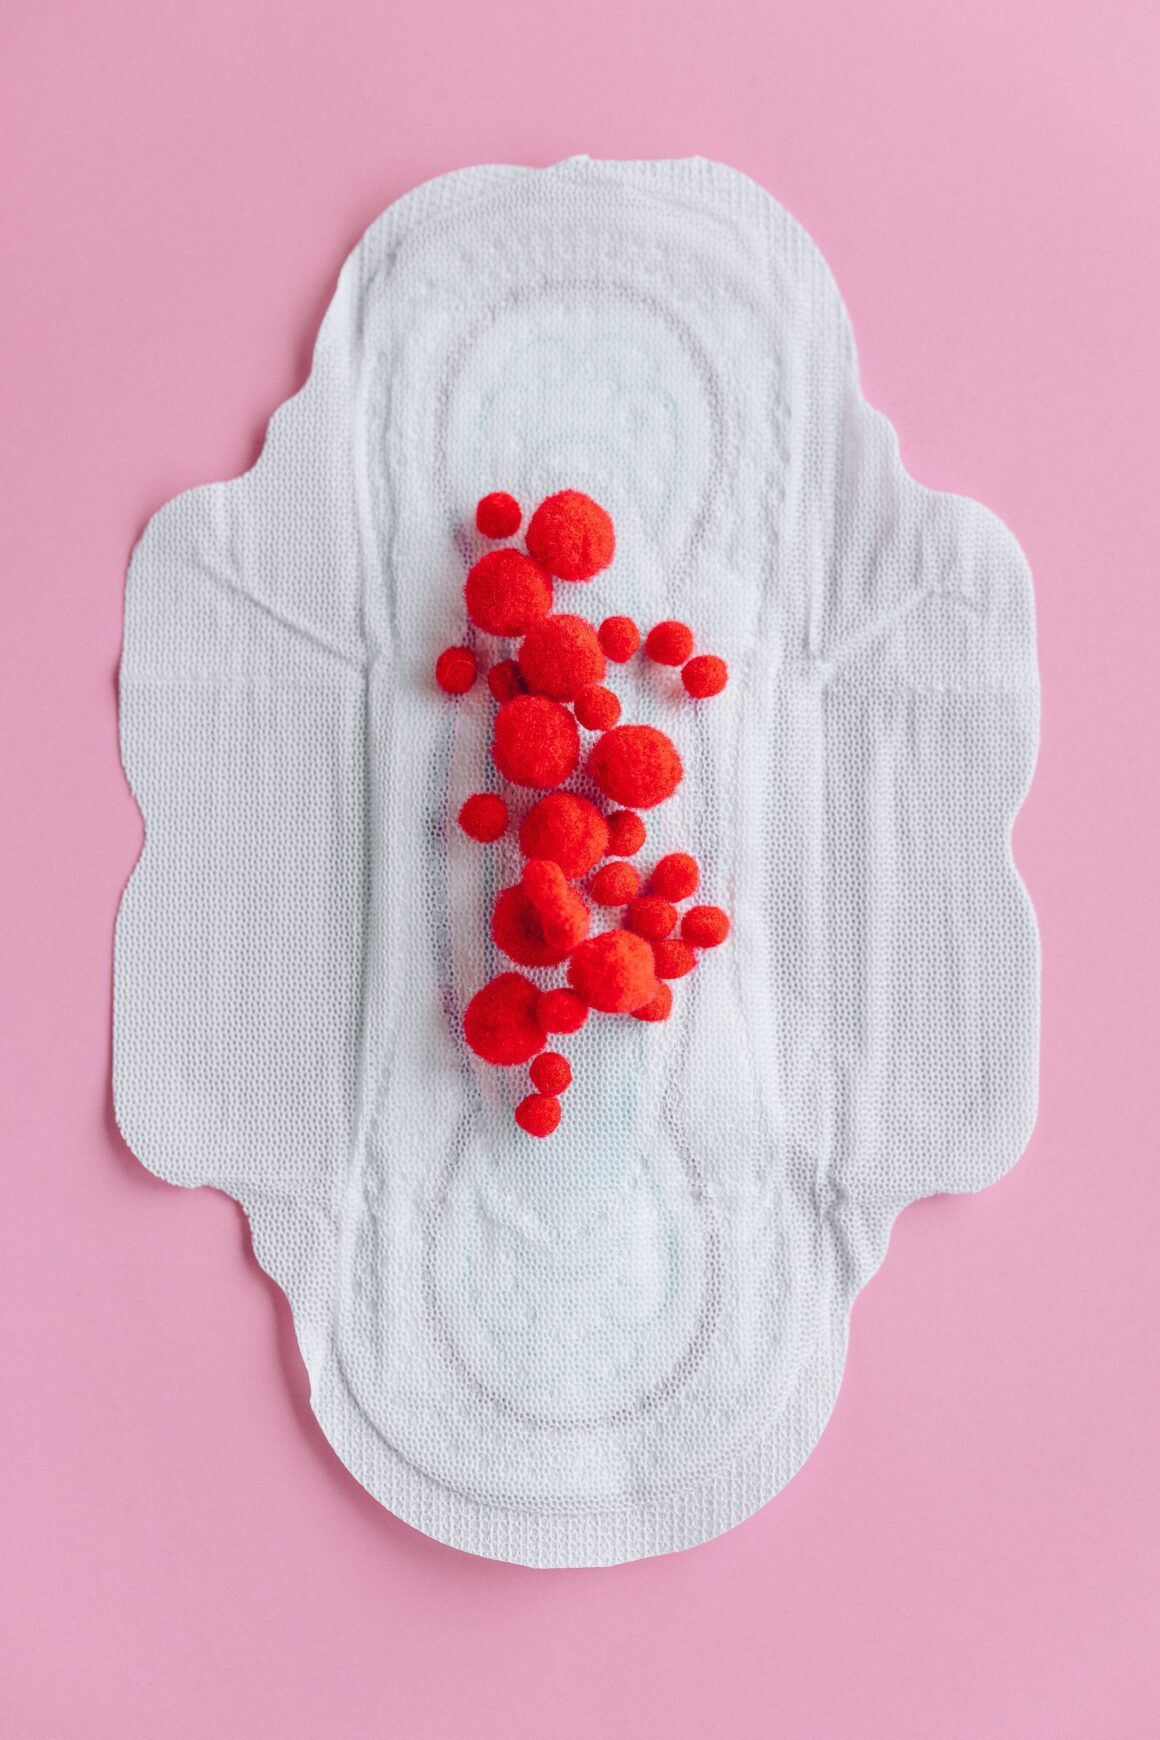 Jak w prosty sposób zacząć normalizować w firmie temat menstruacji i dlaczego to takie ważne?